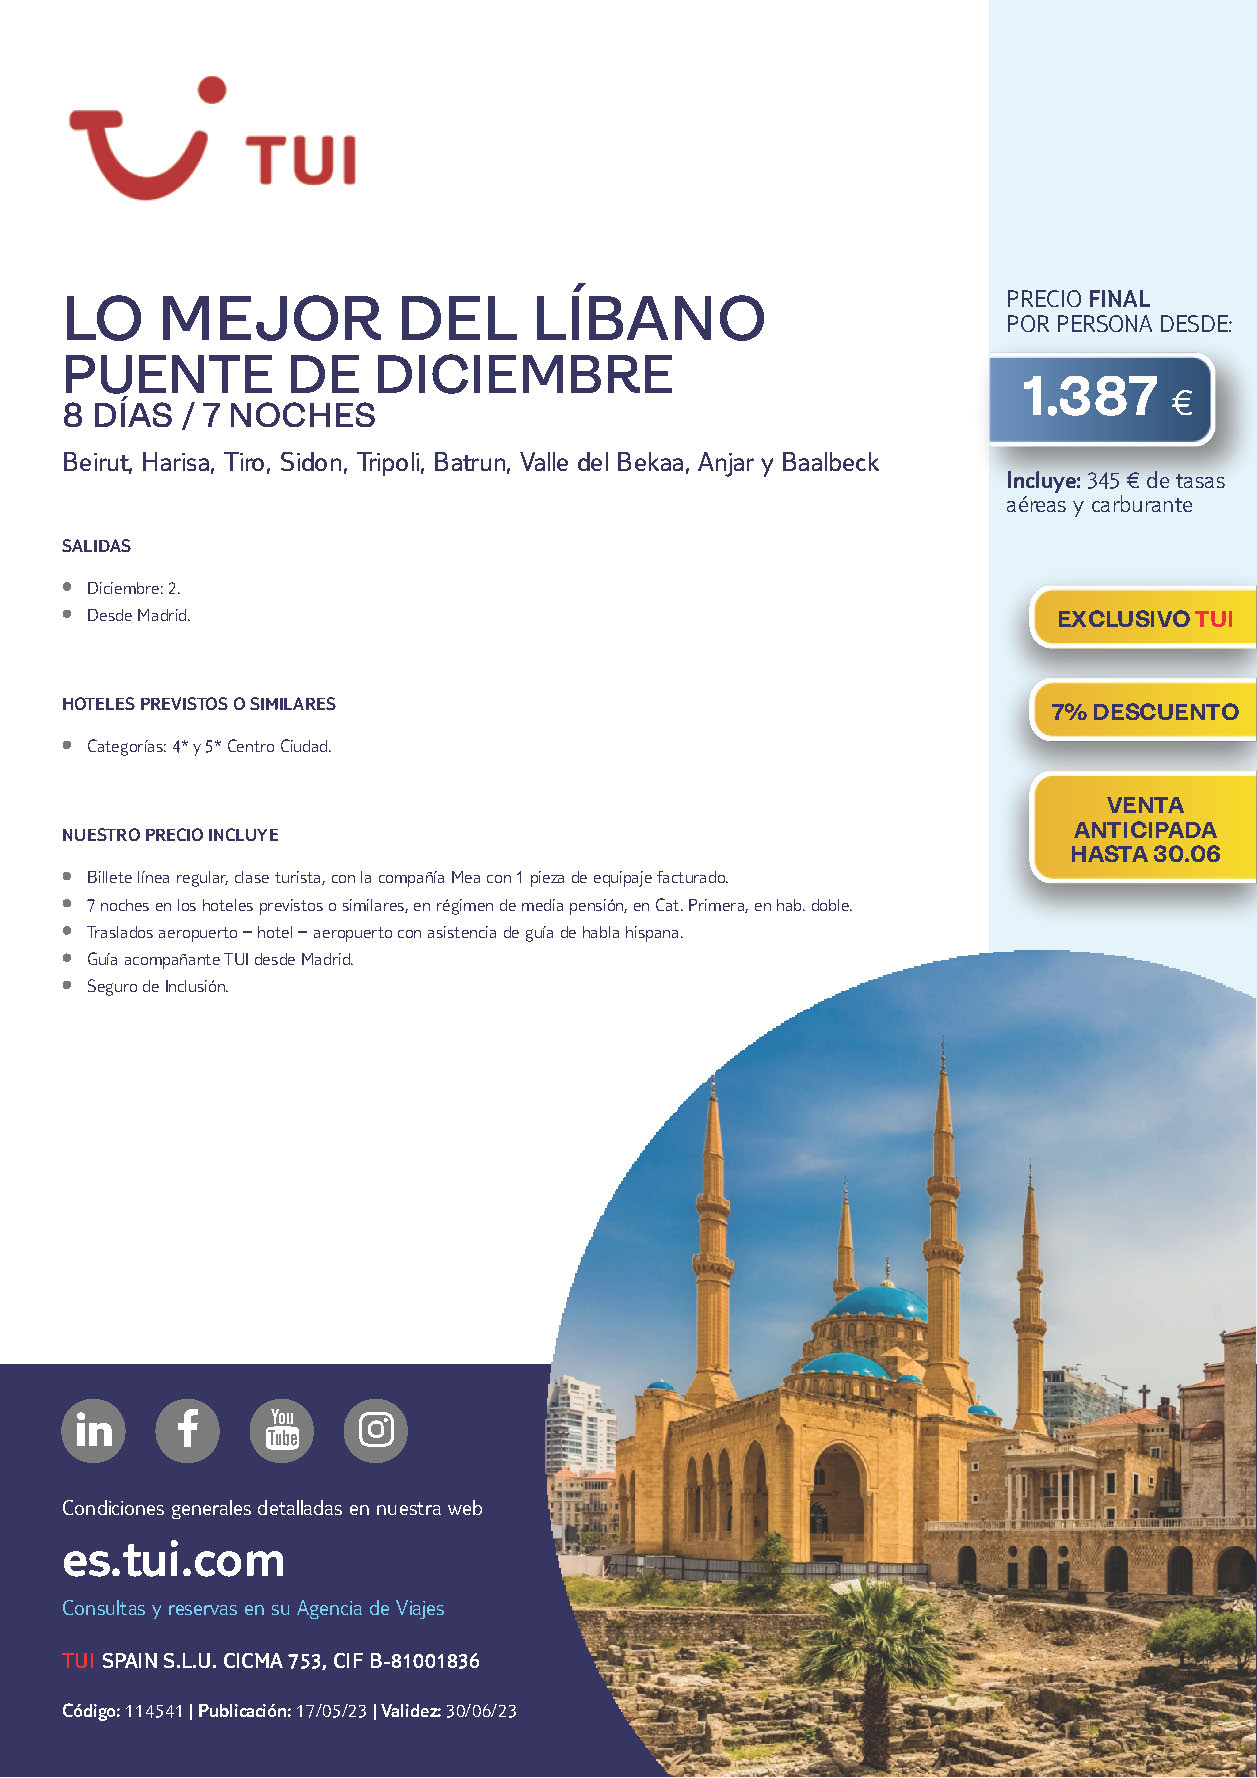 Oferta TUI Puente de Diciembre 2023 circuito Lo mejor del Libano 8 dias salidas 2 de diciembre vuelo directo desde Madrid vuelos Mea